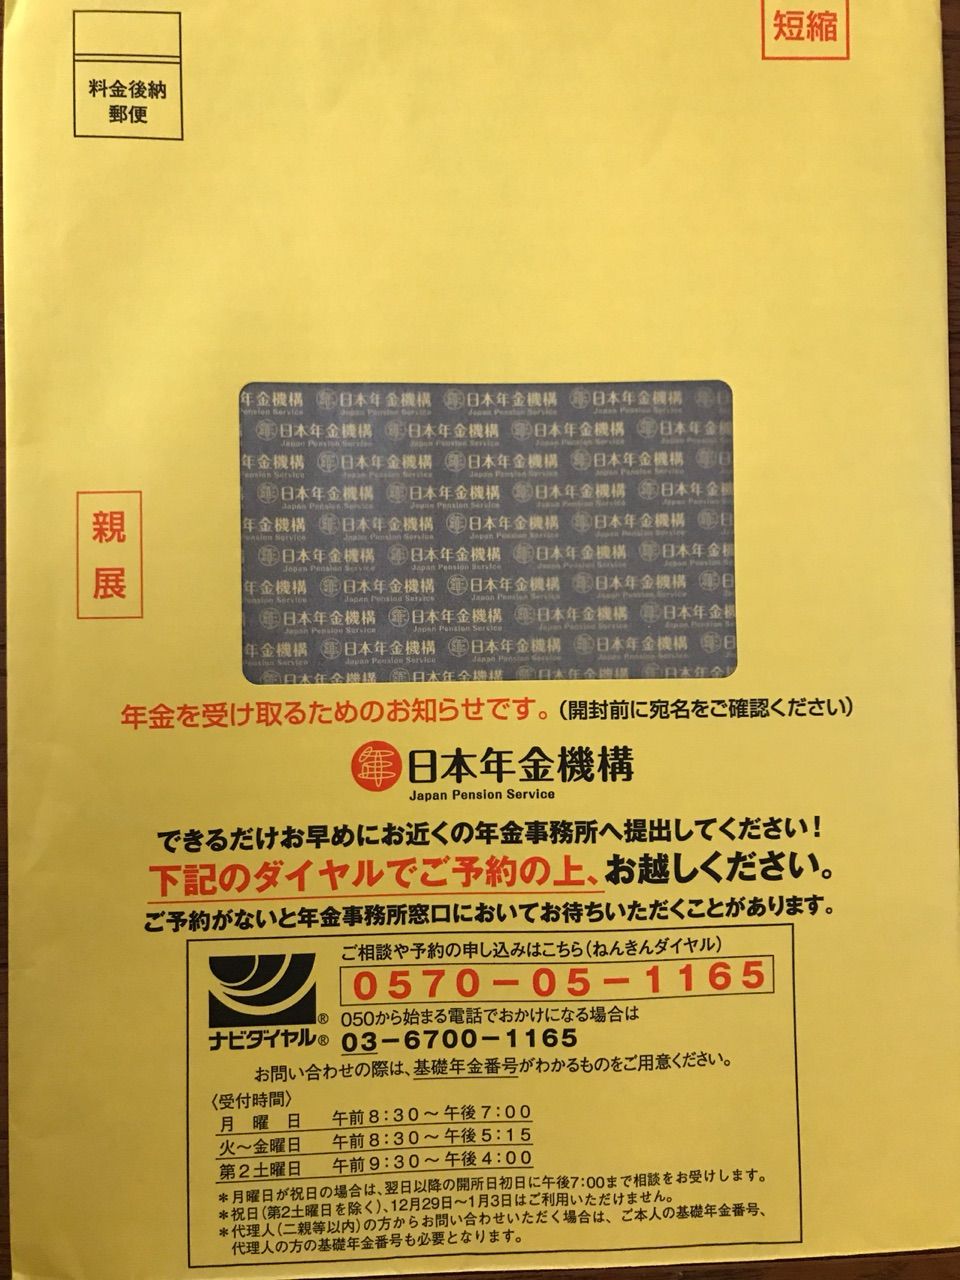 黄色い封筒の短縮年金の通知 松山市会議員 清水なおみの元気日記